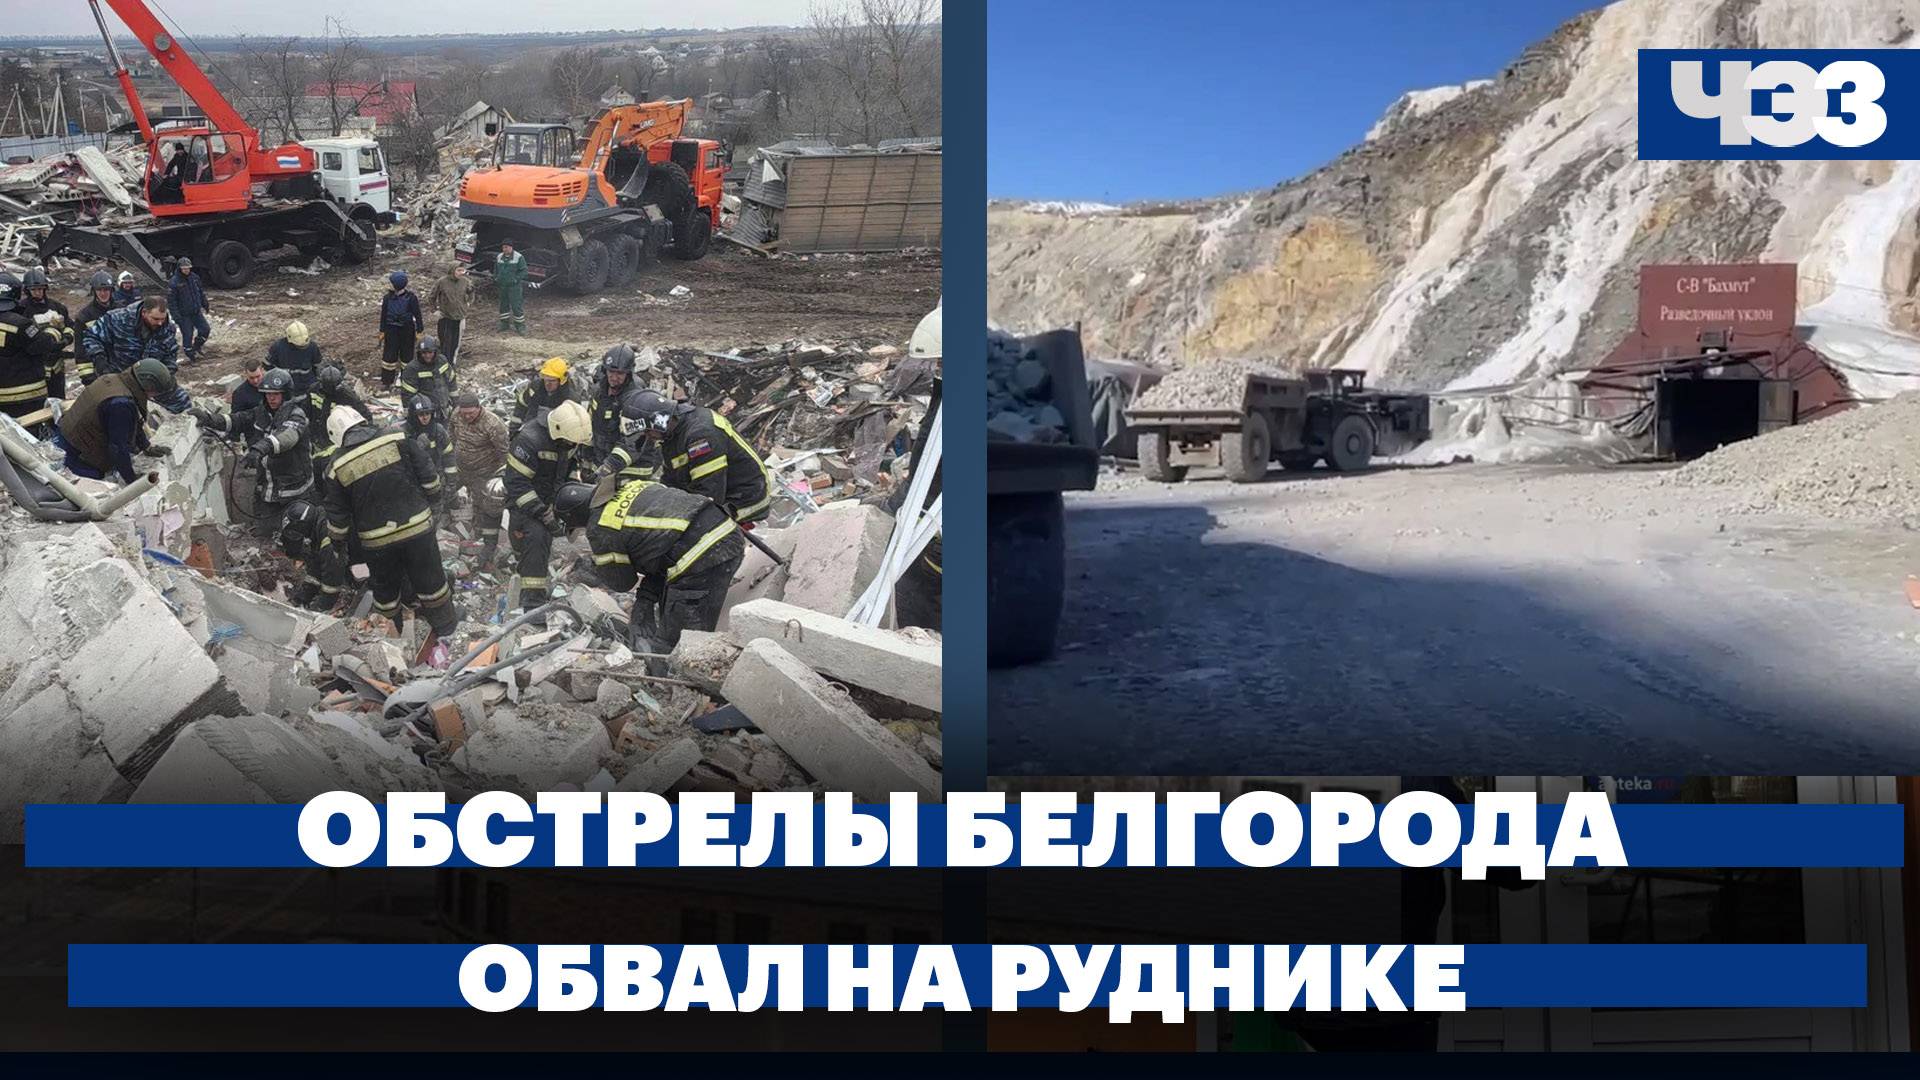 9 тысяч детей эвакуируют из Белгородской области, обвал на руднике в Амурской области